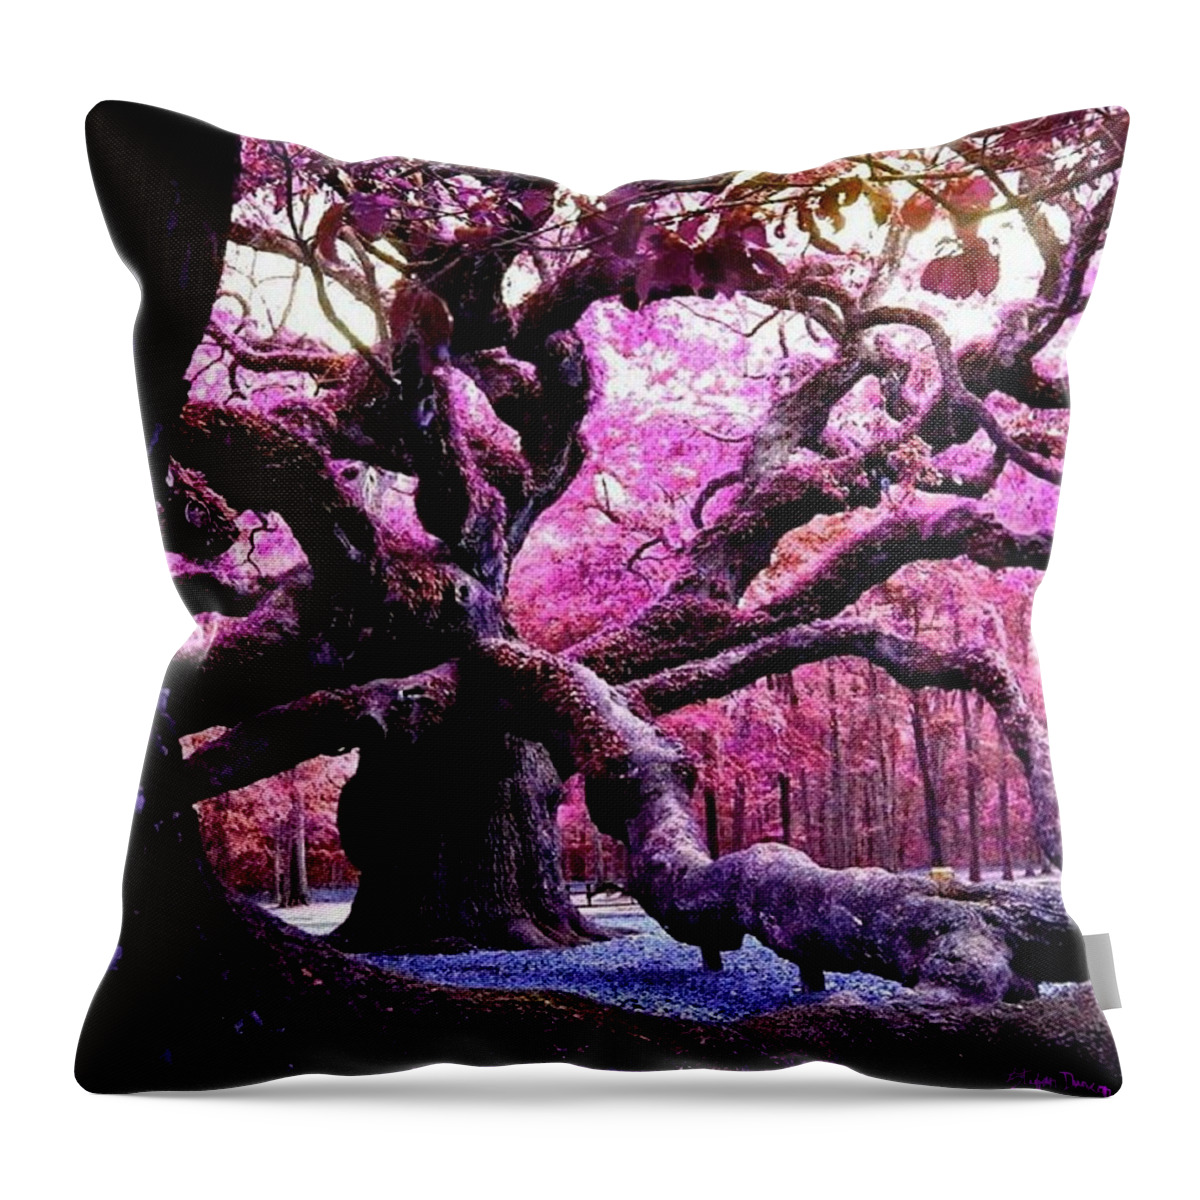 Angel Oak Throw Pillow featuring the mixed media Angel Oak, King Of Oaks by Stefan Duncan